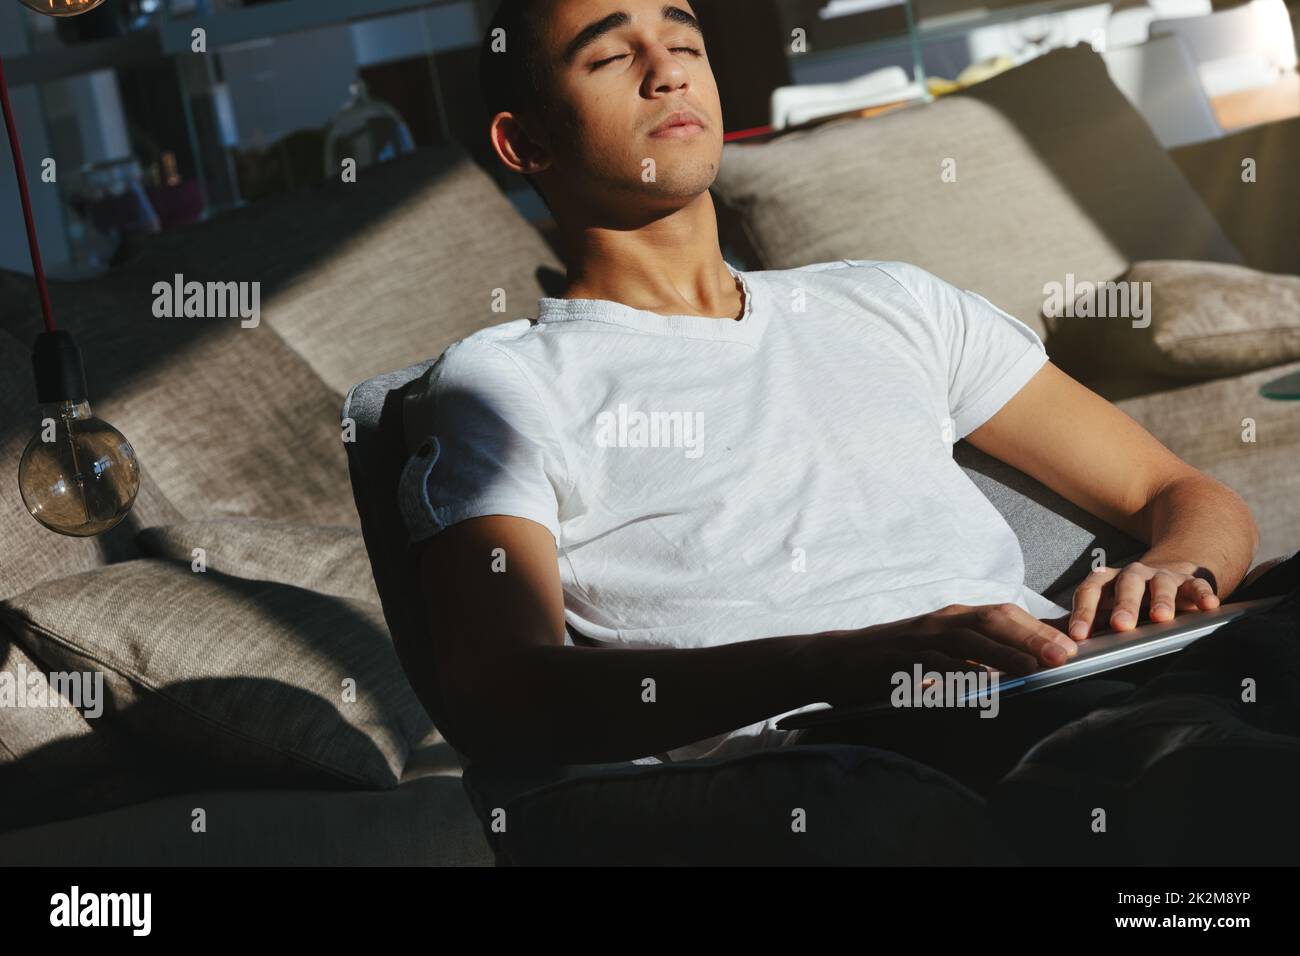 Ein Mann, der sich auf einer bequemen Couch entspannt und die warme Sonne genießt Stockfoto